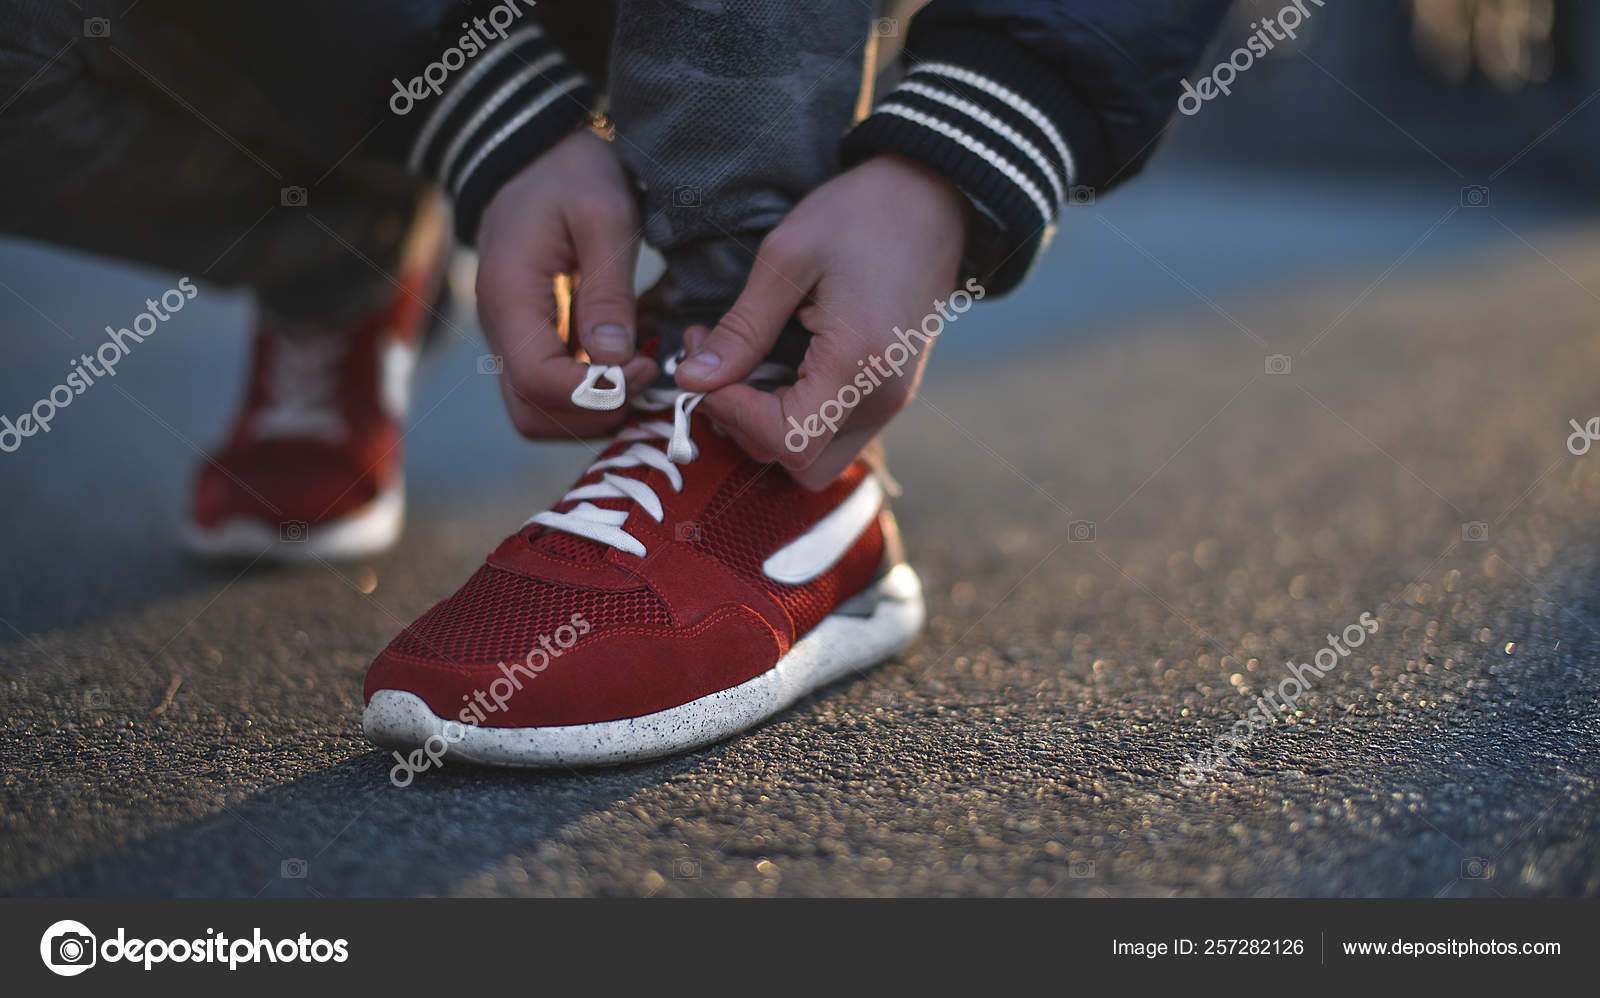 tying sneakers